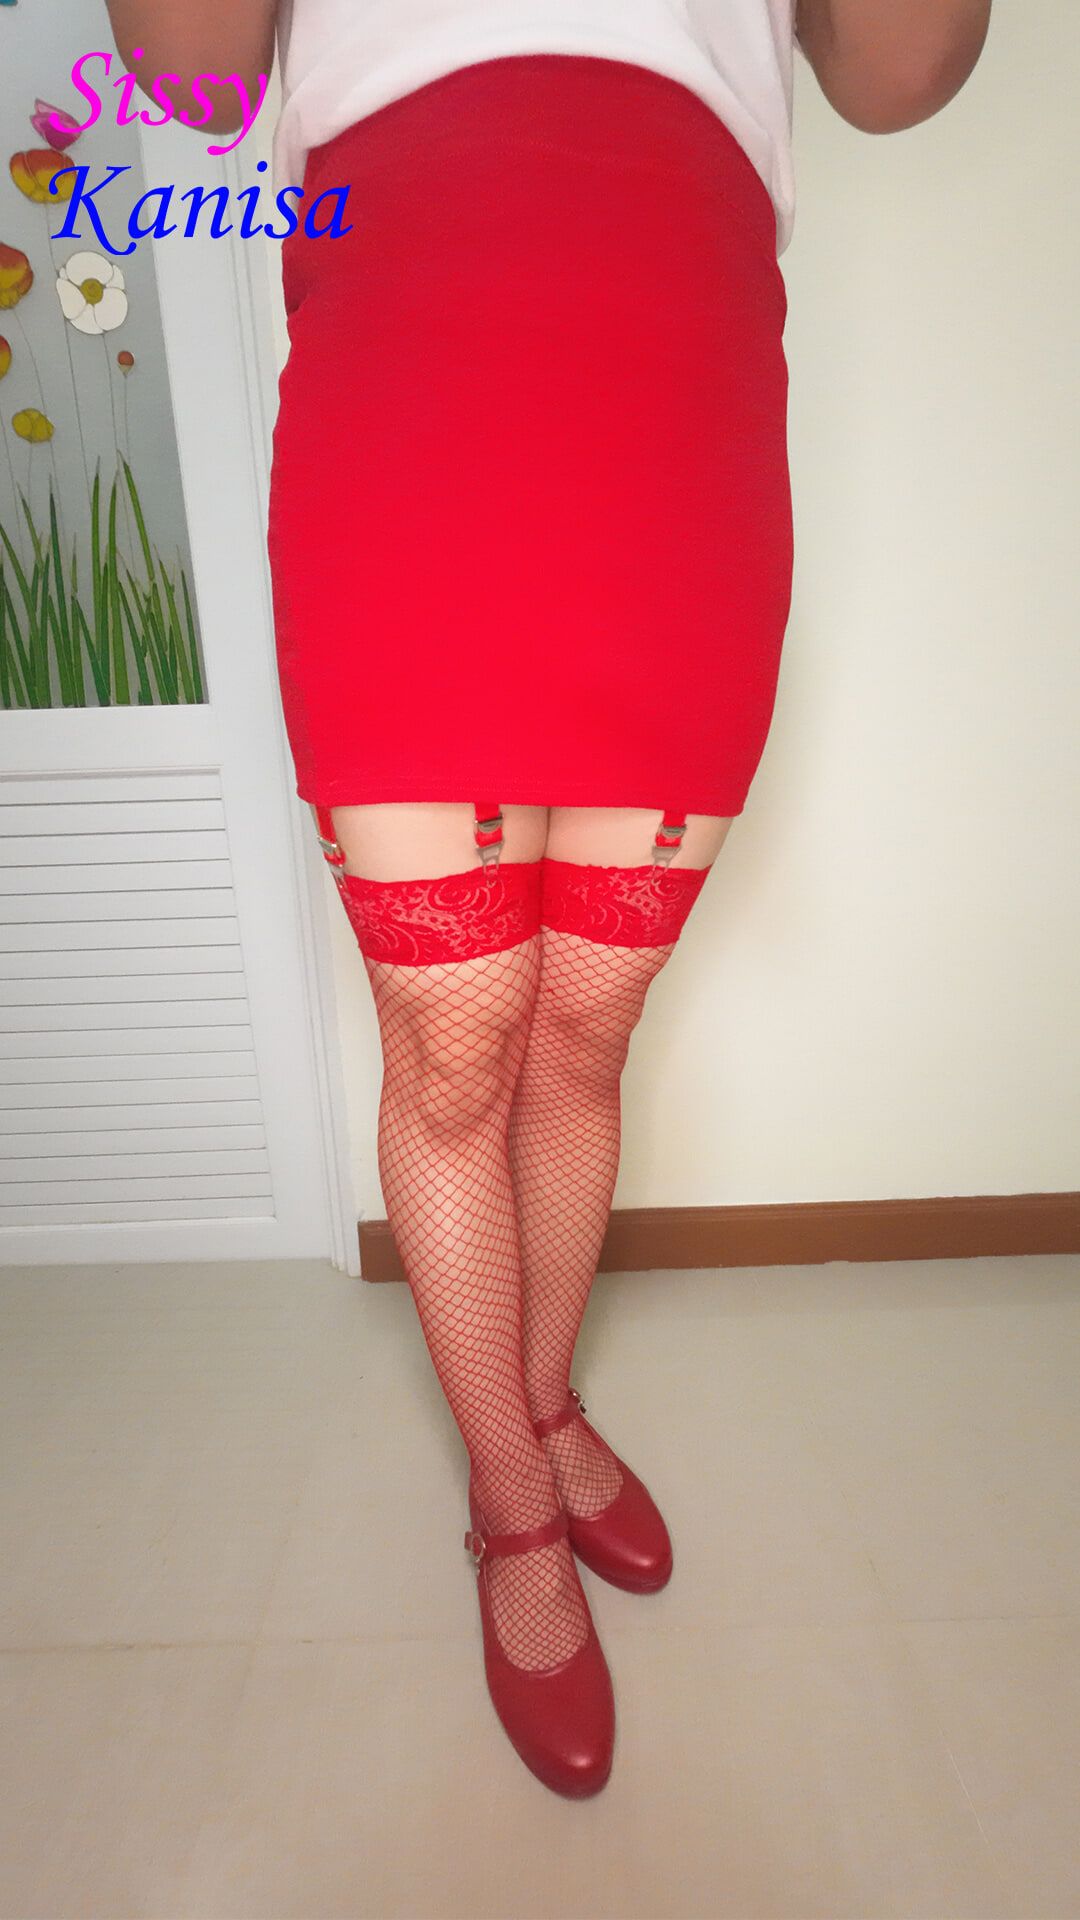 SisK Crossdresser in sexy red mini skirt and net stocking.